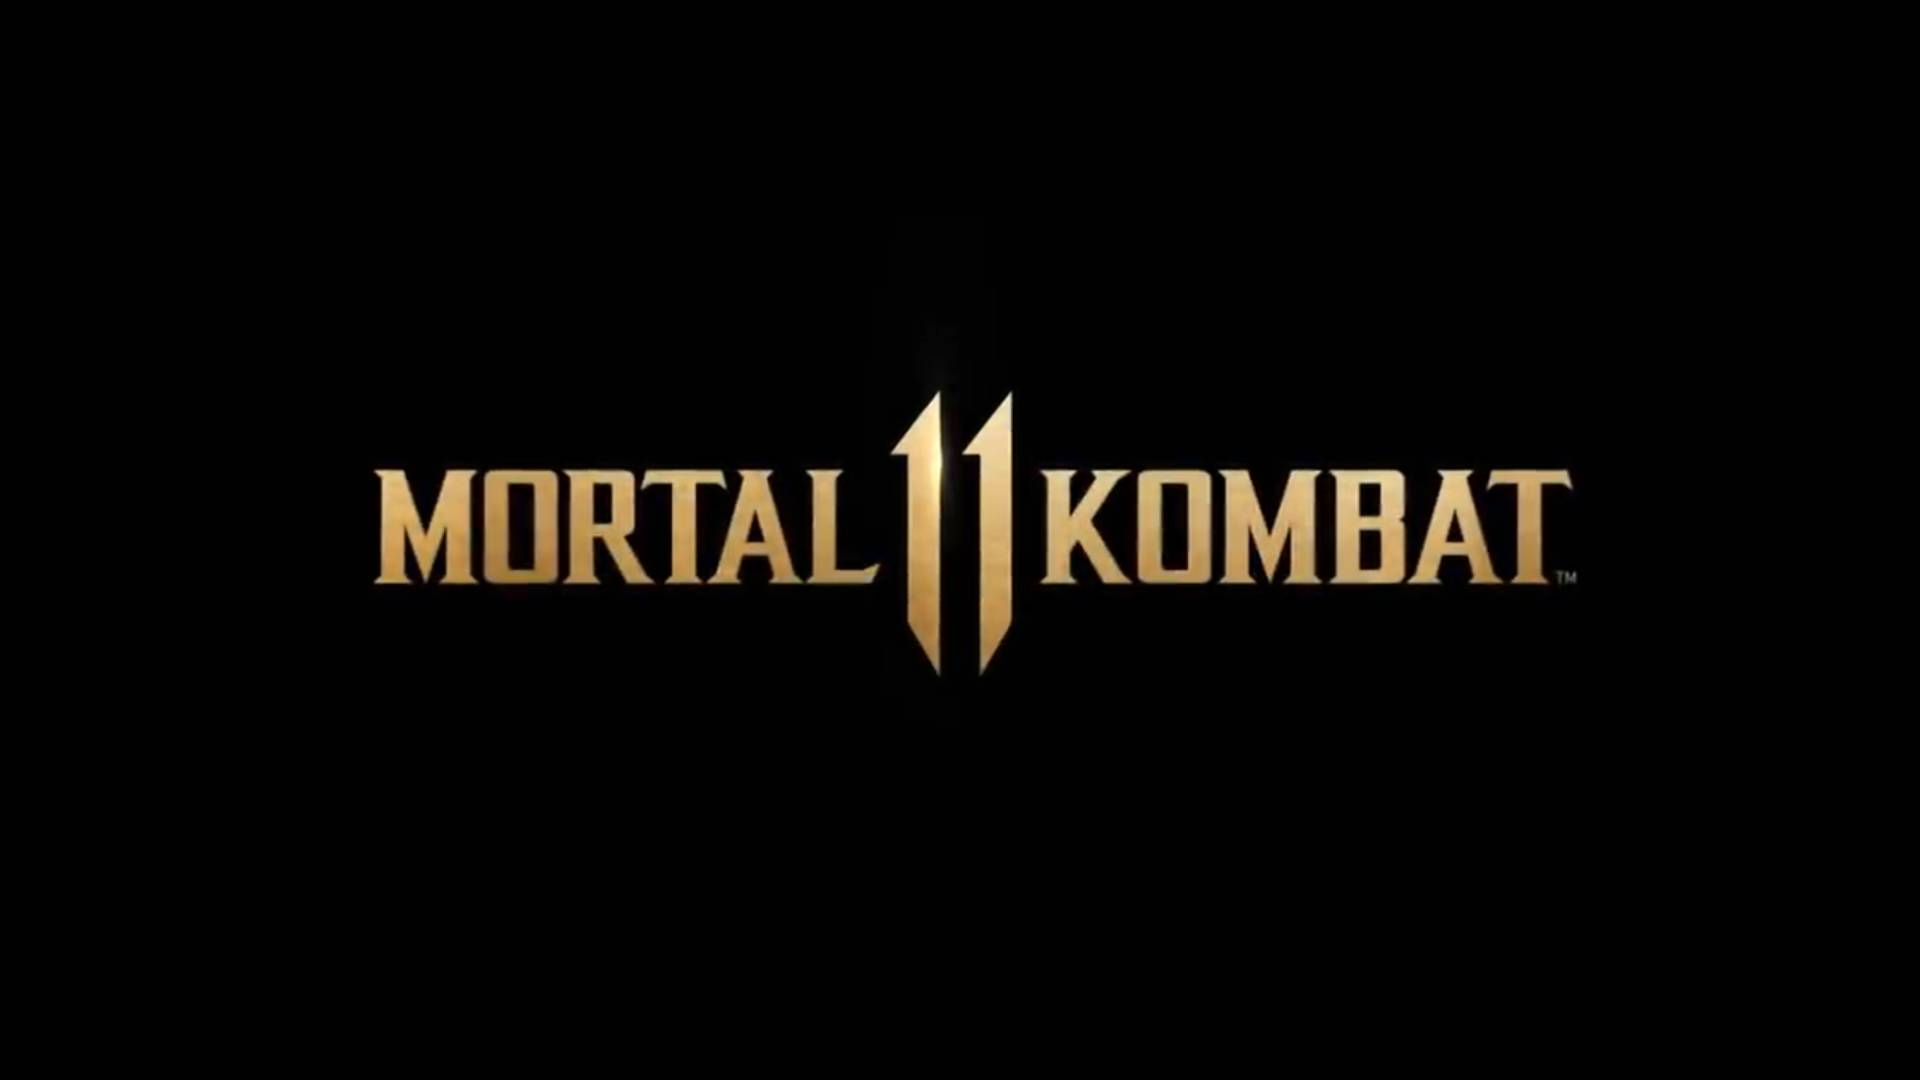 Un nuevo parche para Mortal Kombat 11 ya está disponible: aquí están los detalles